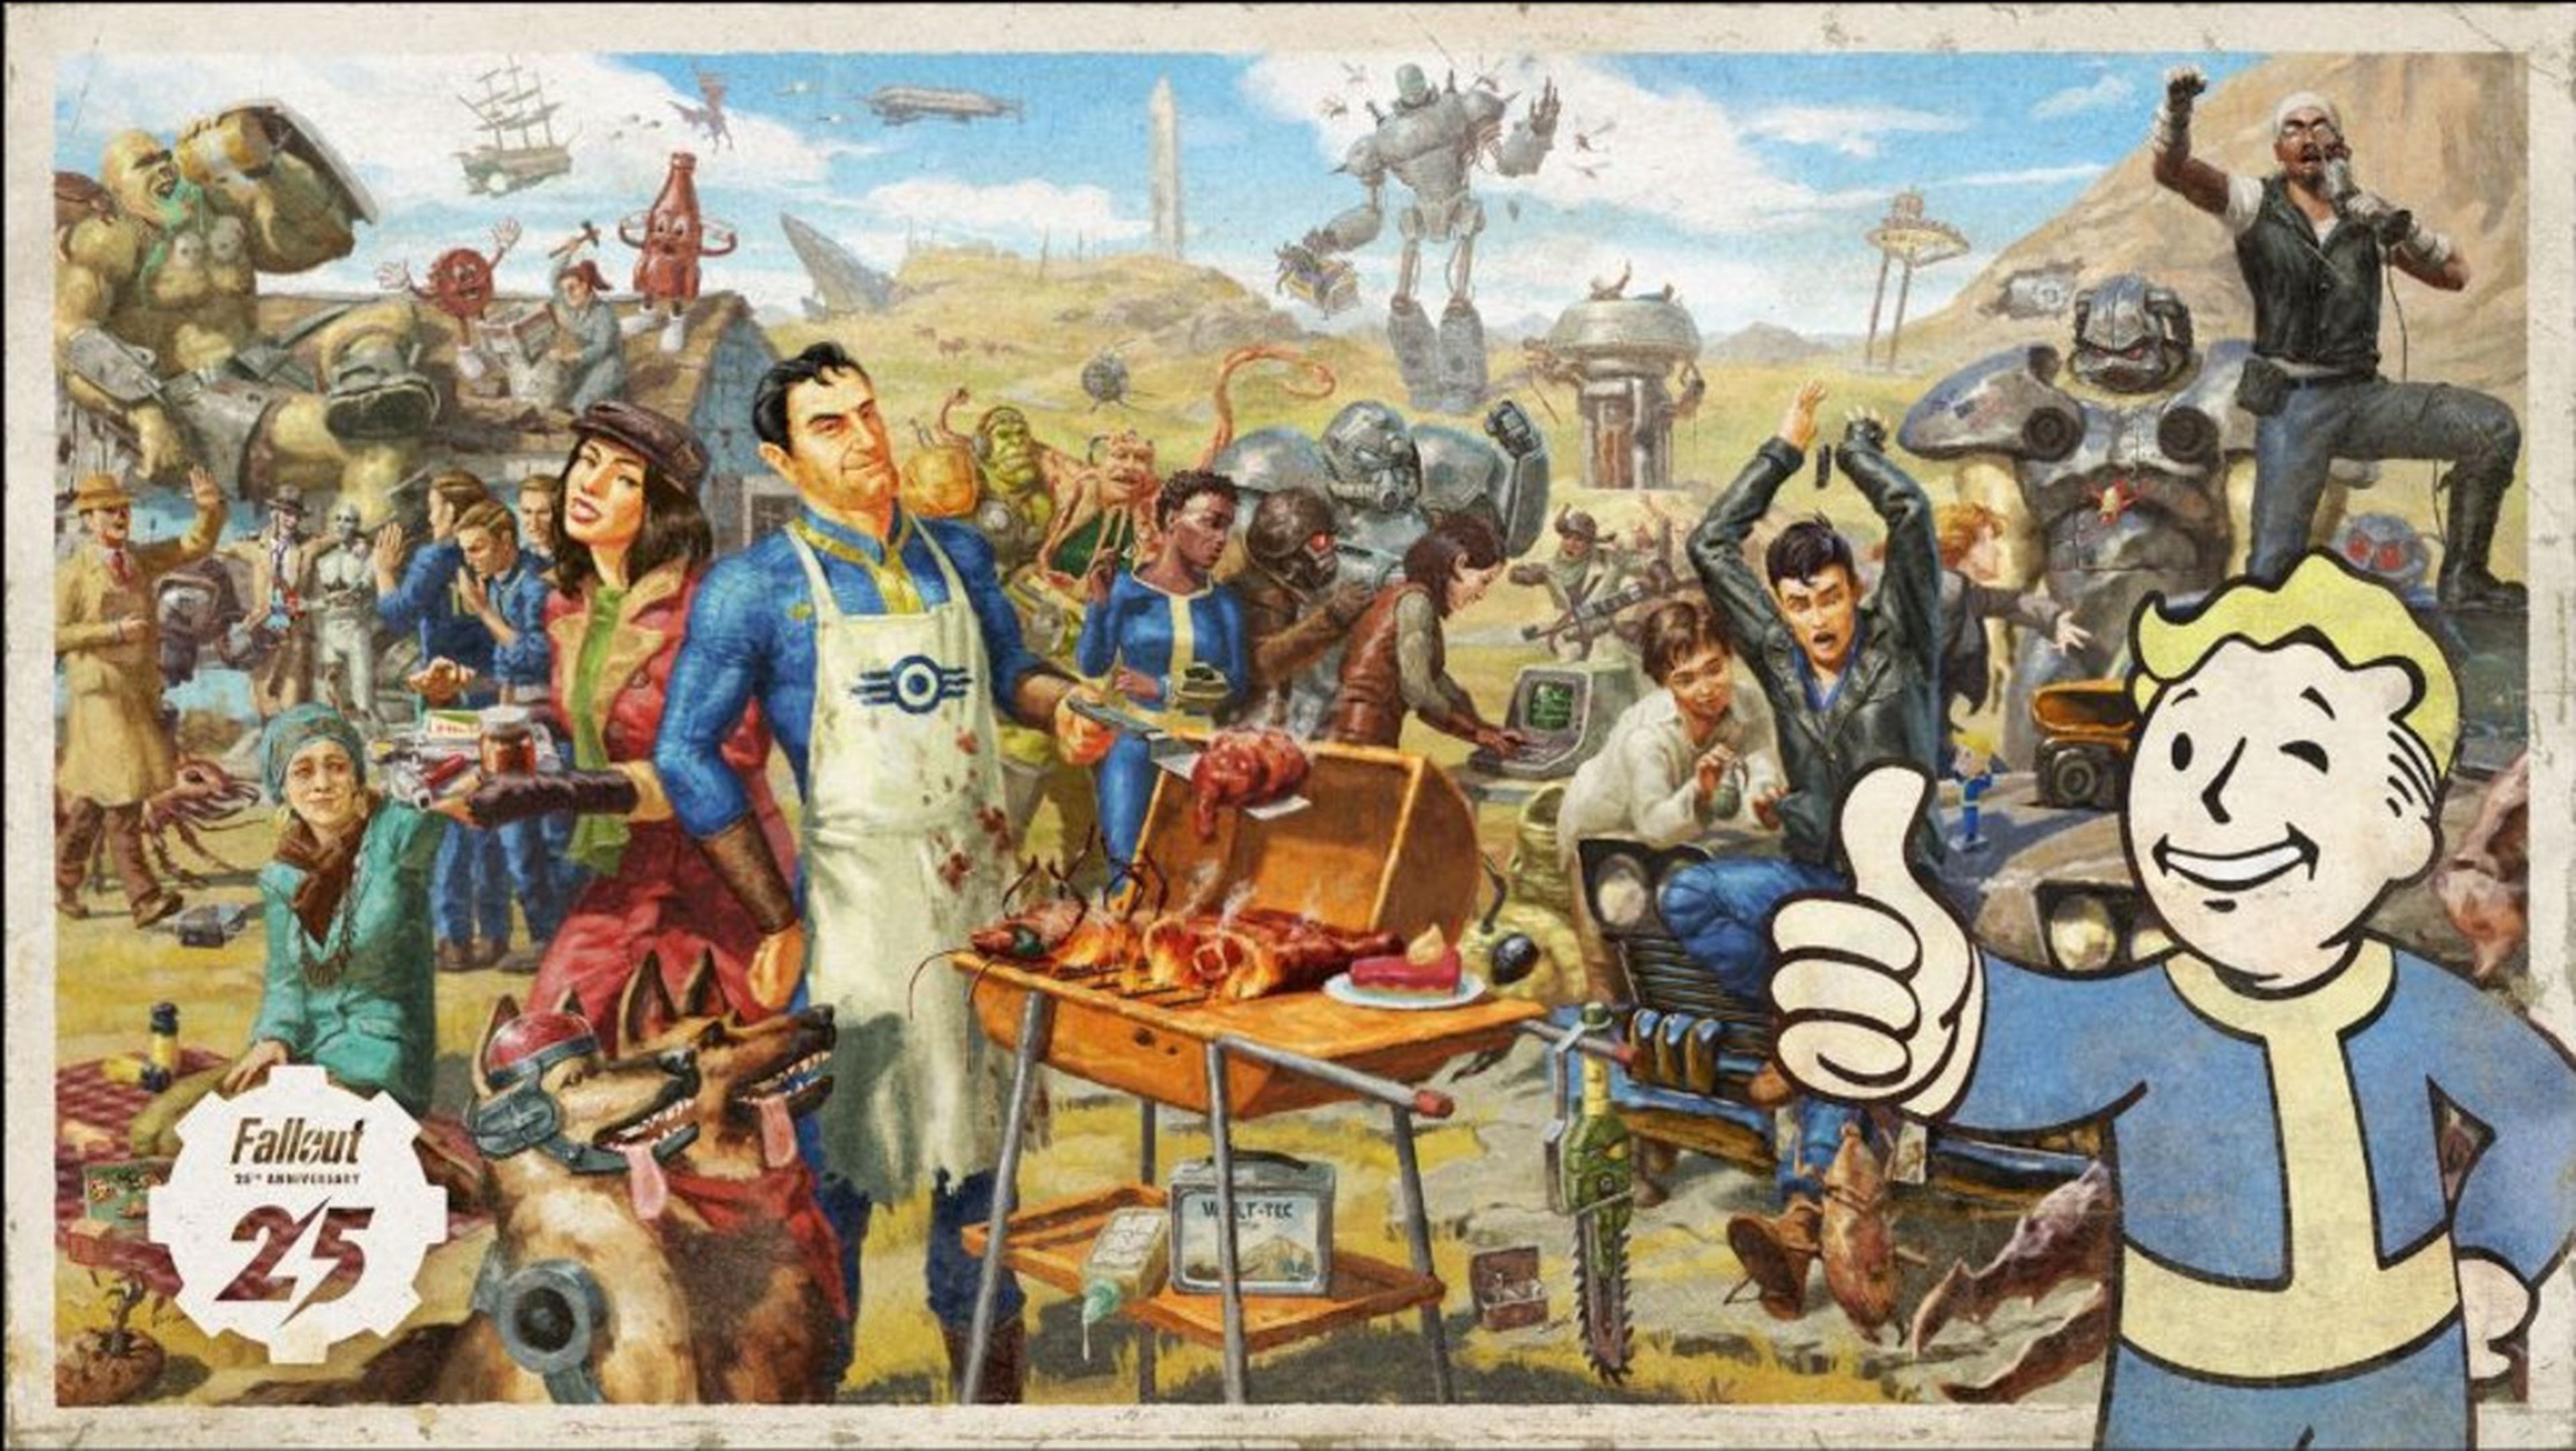 Fallout 76 gratis durante una semana gracias al 25 aniversario de la